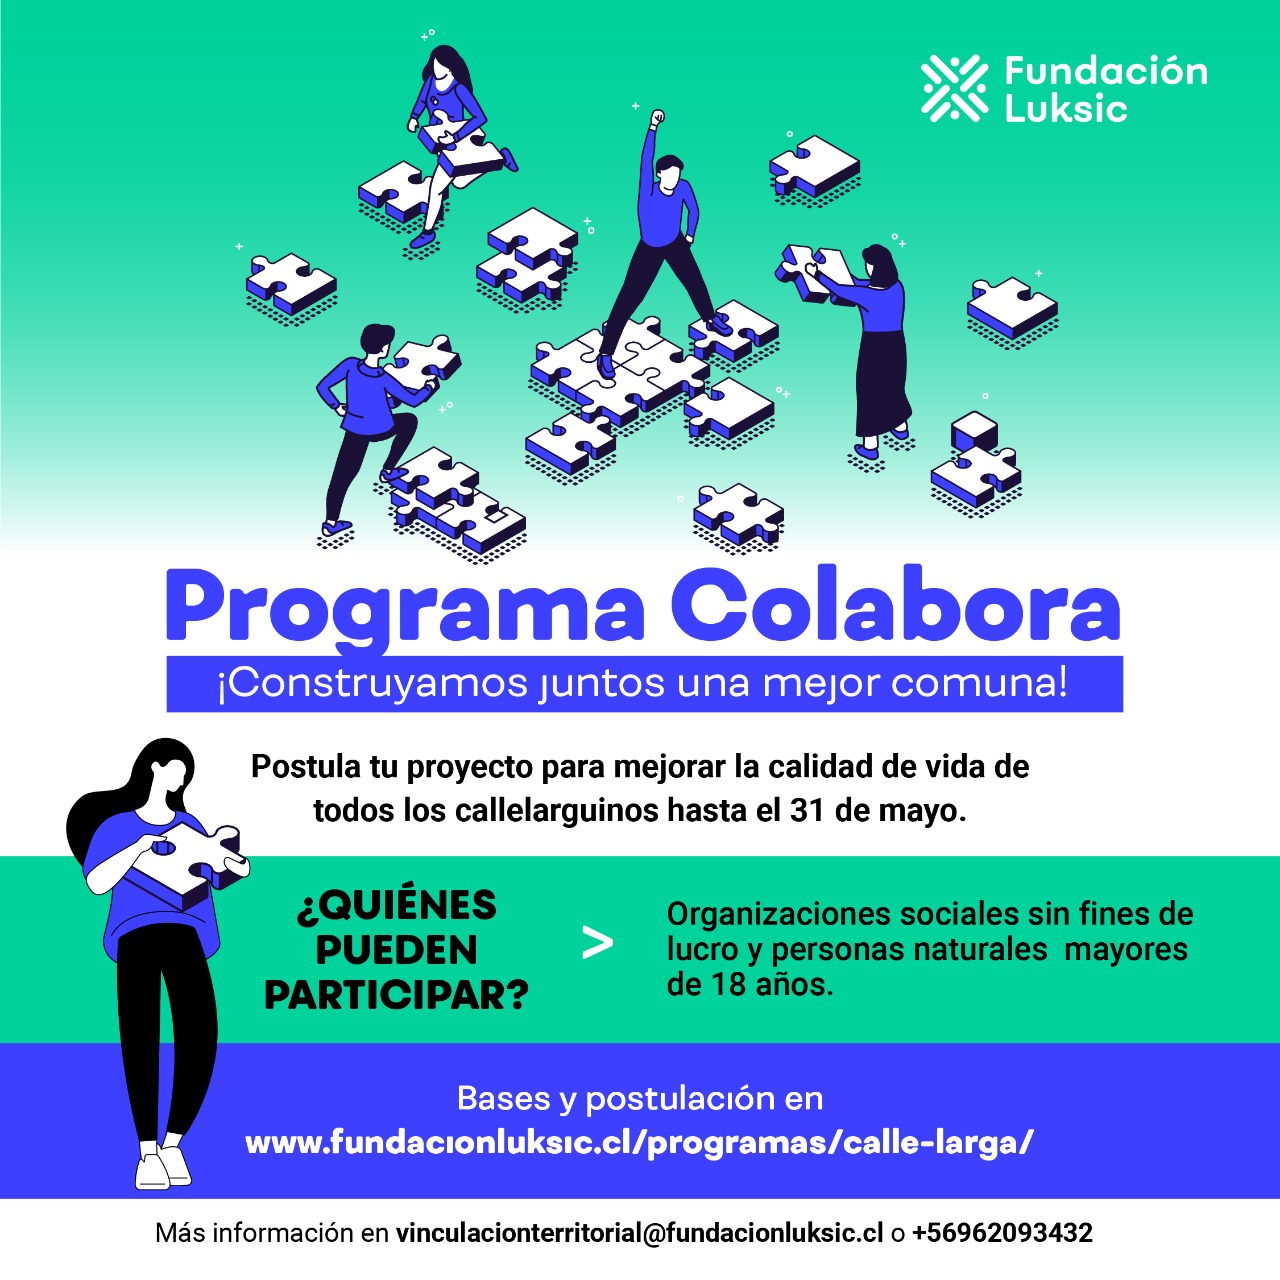 CALLE LARGA:  Fundación Luksic lanza programa “Colabora” en Calle Larga